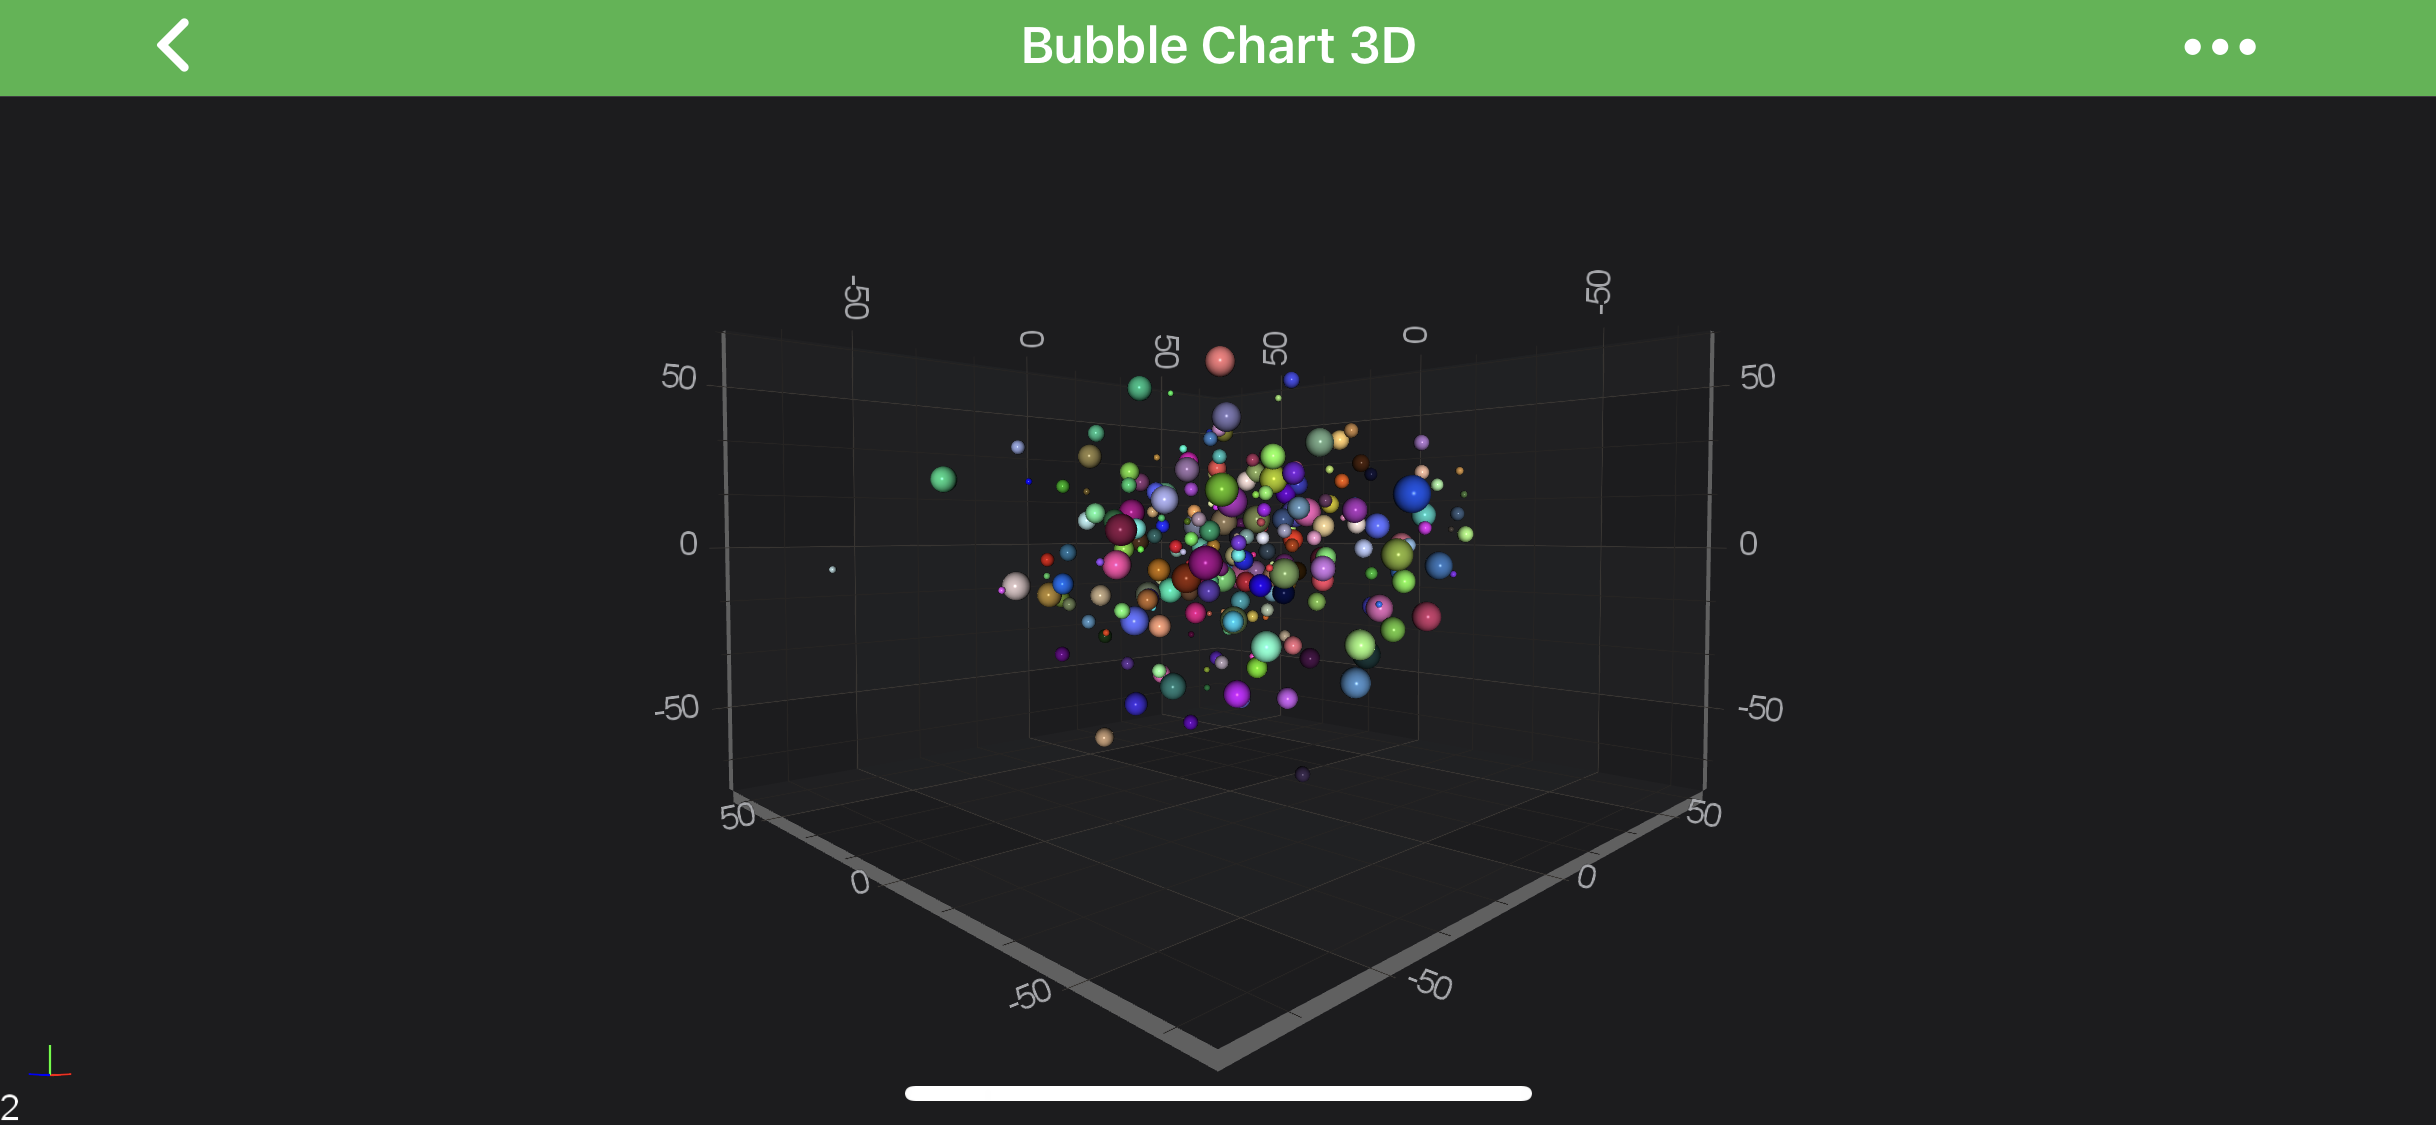 Bubble Chart 3D